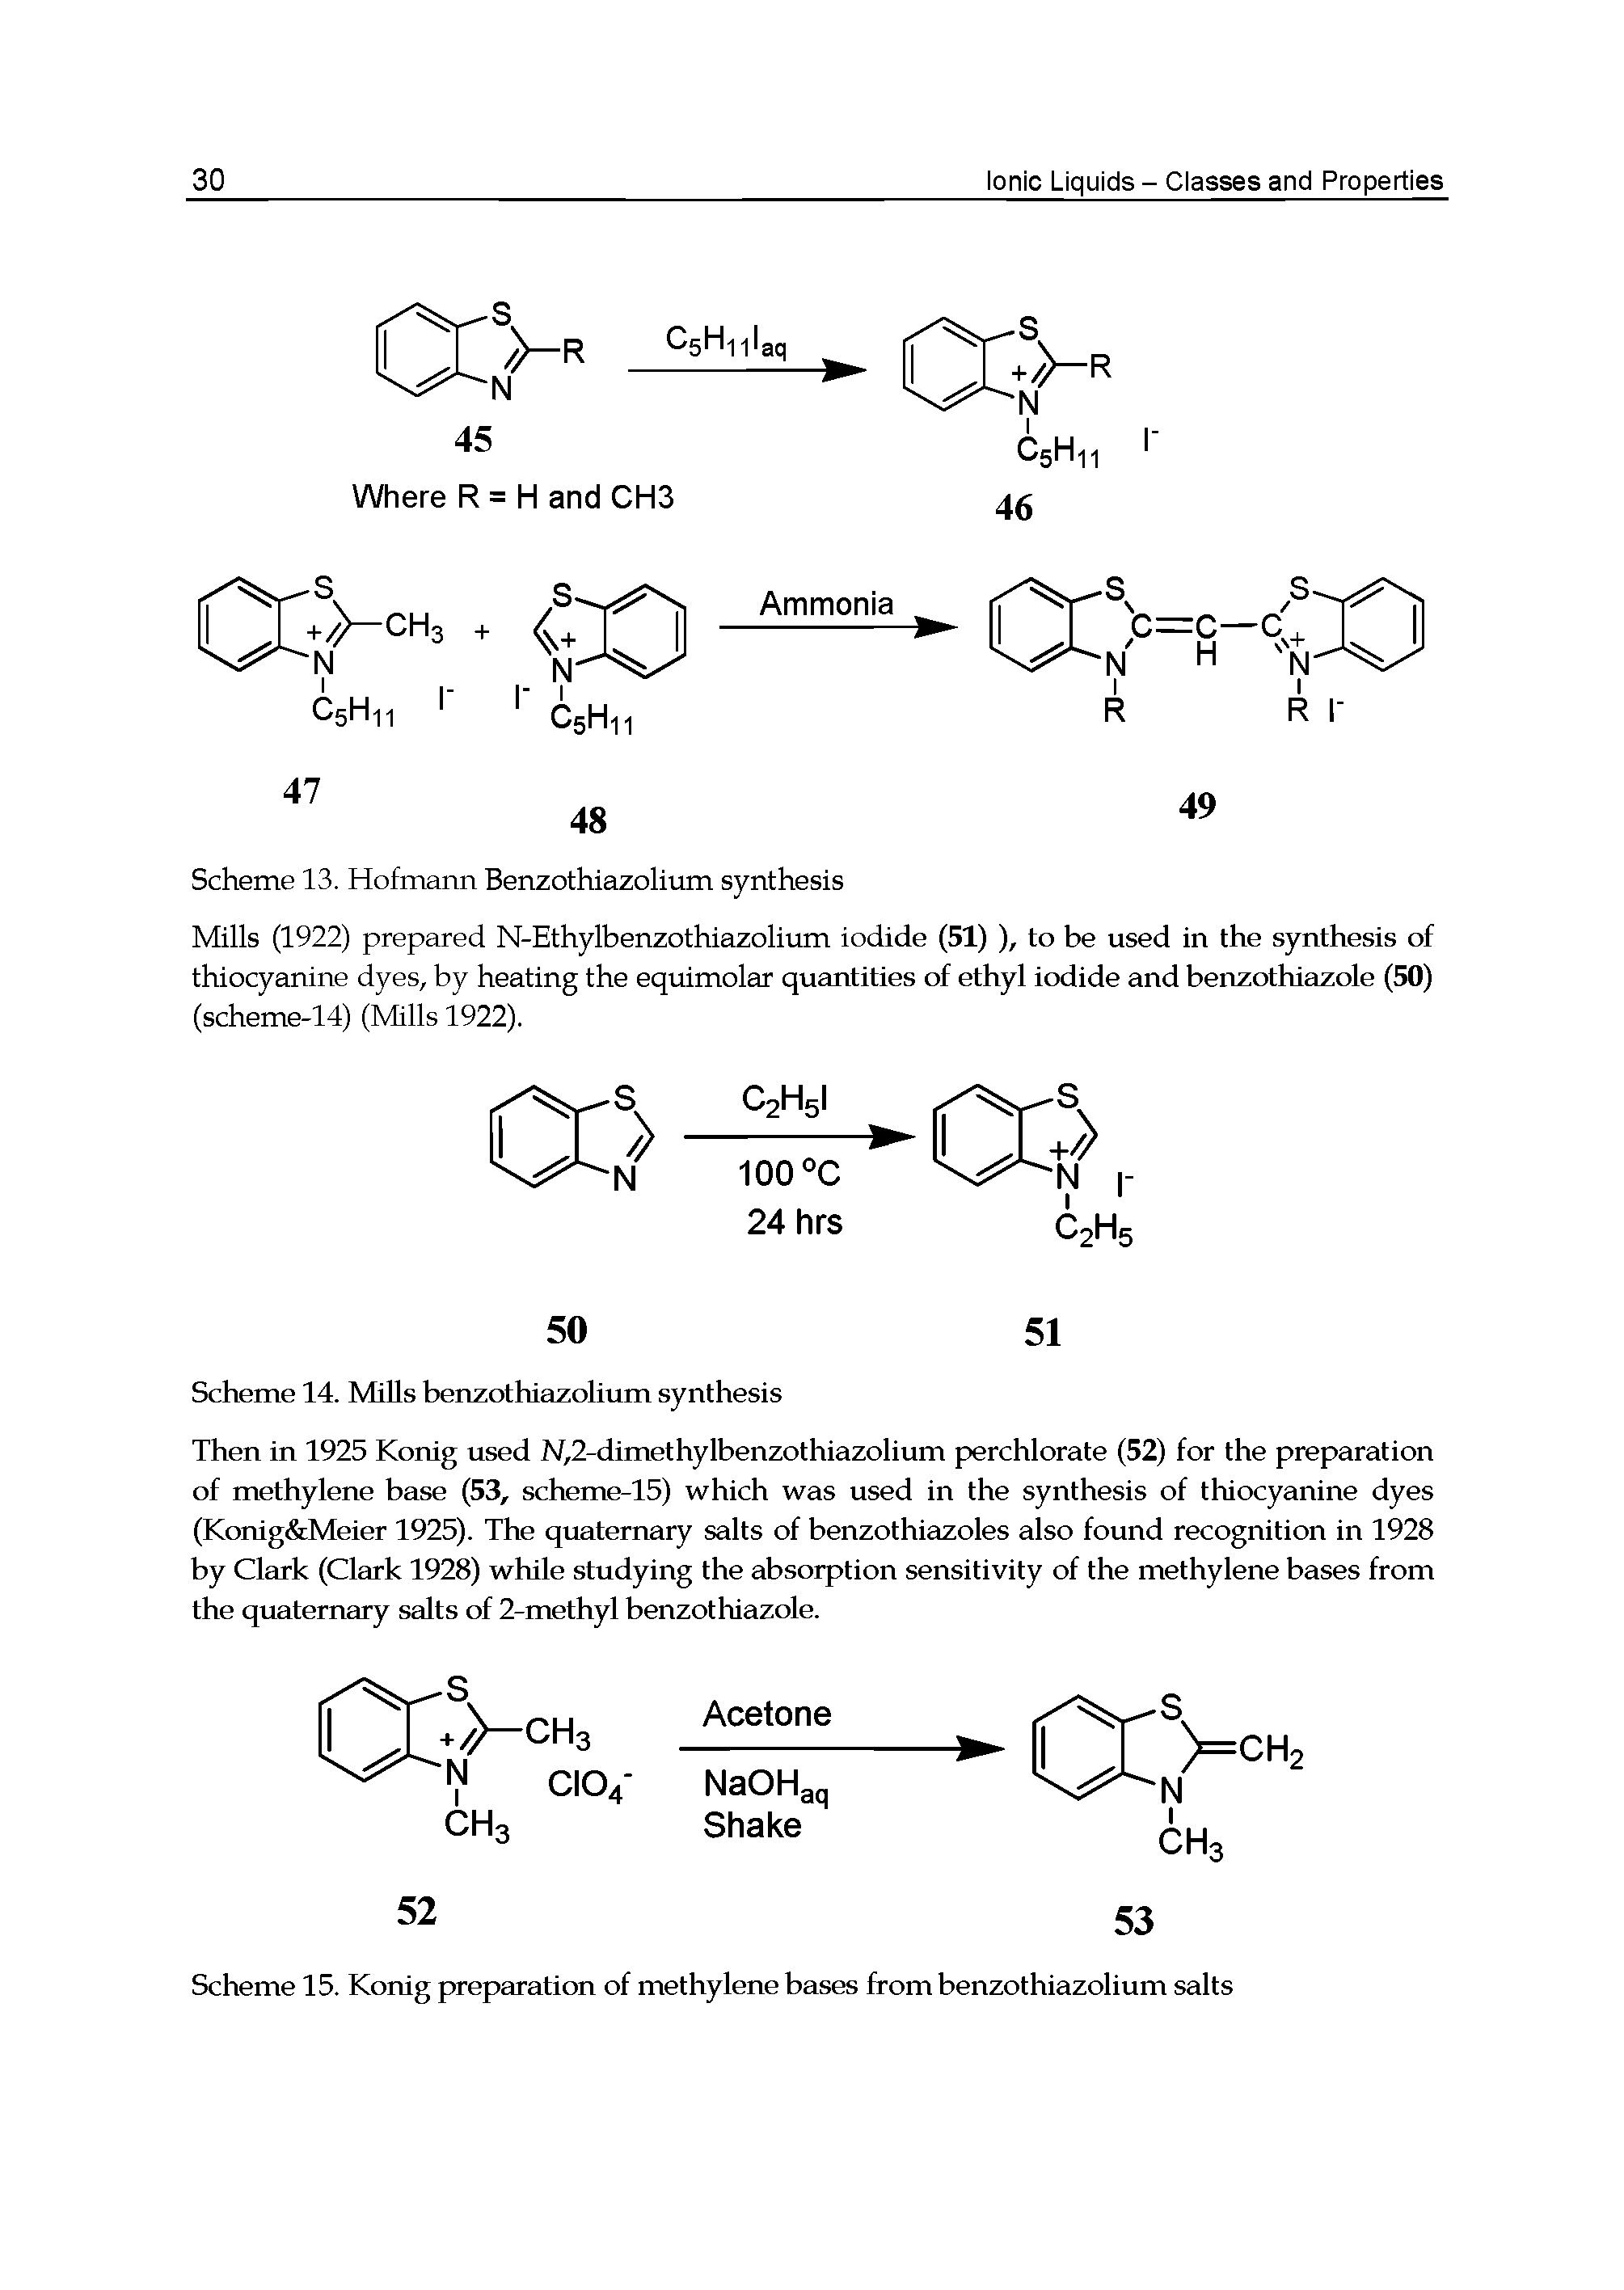 Scheme 15. Konig preparation of methylene bases from benzothiazolium salts...